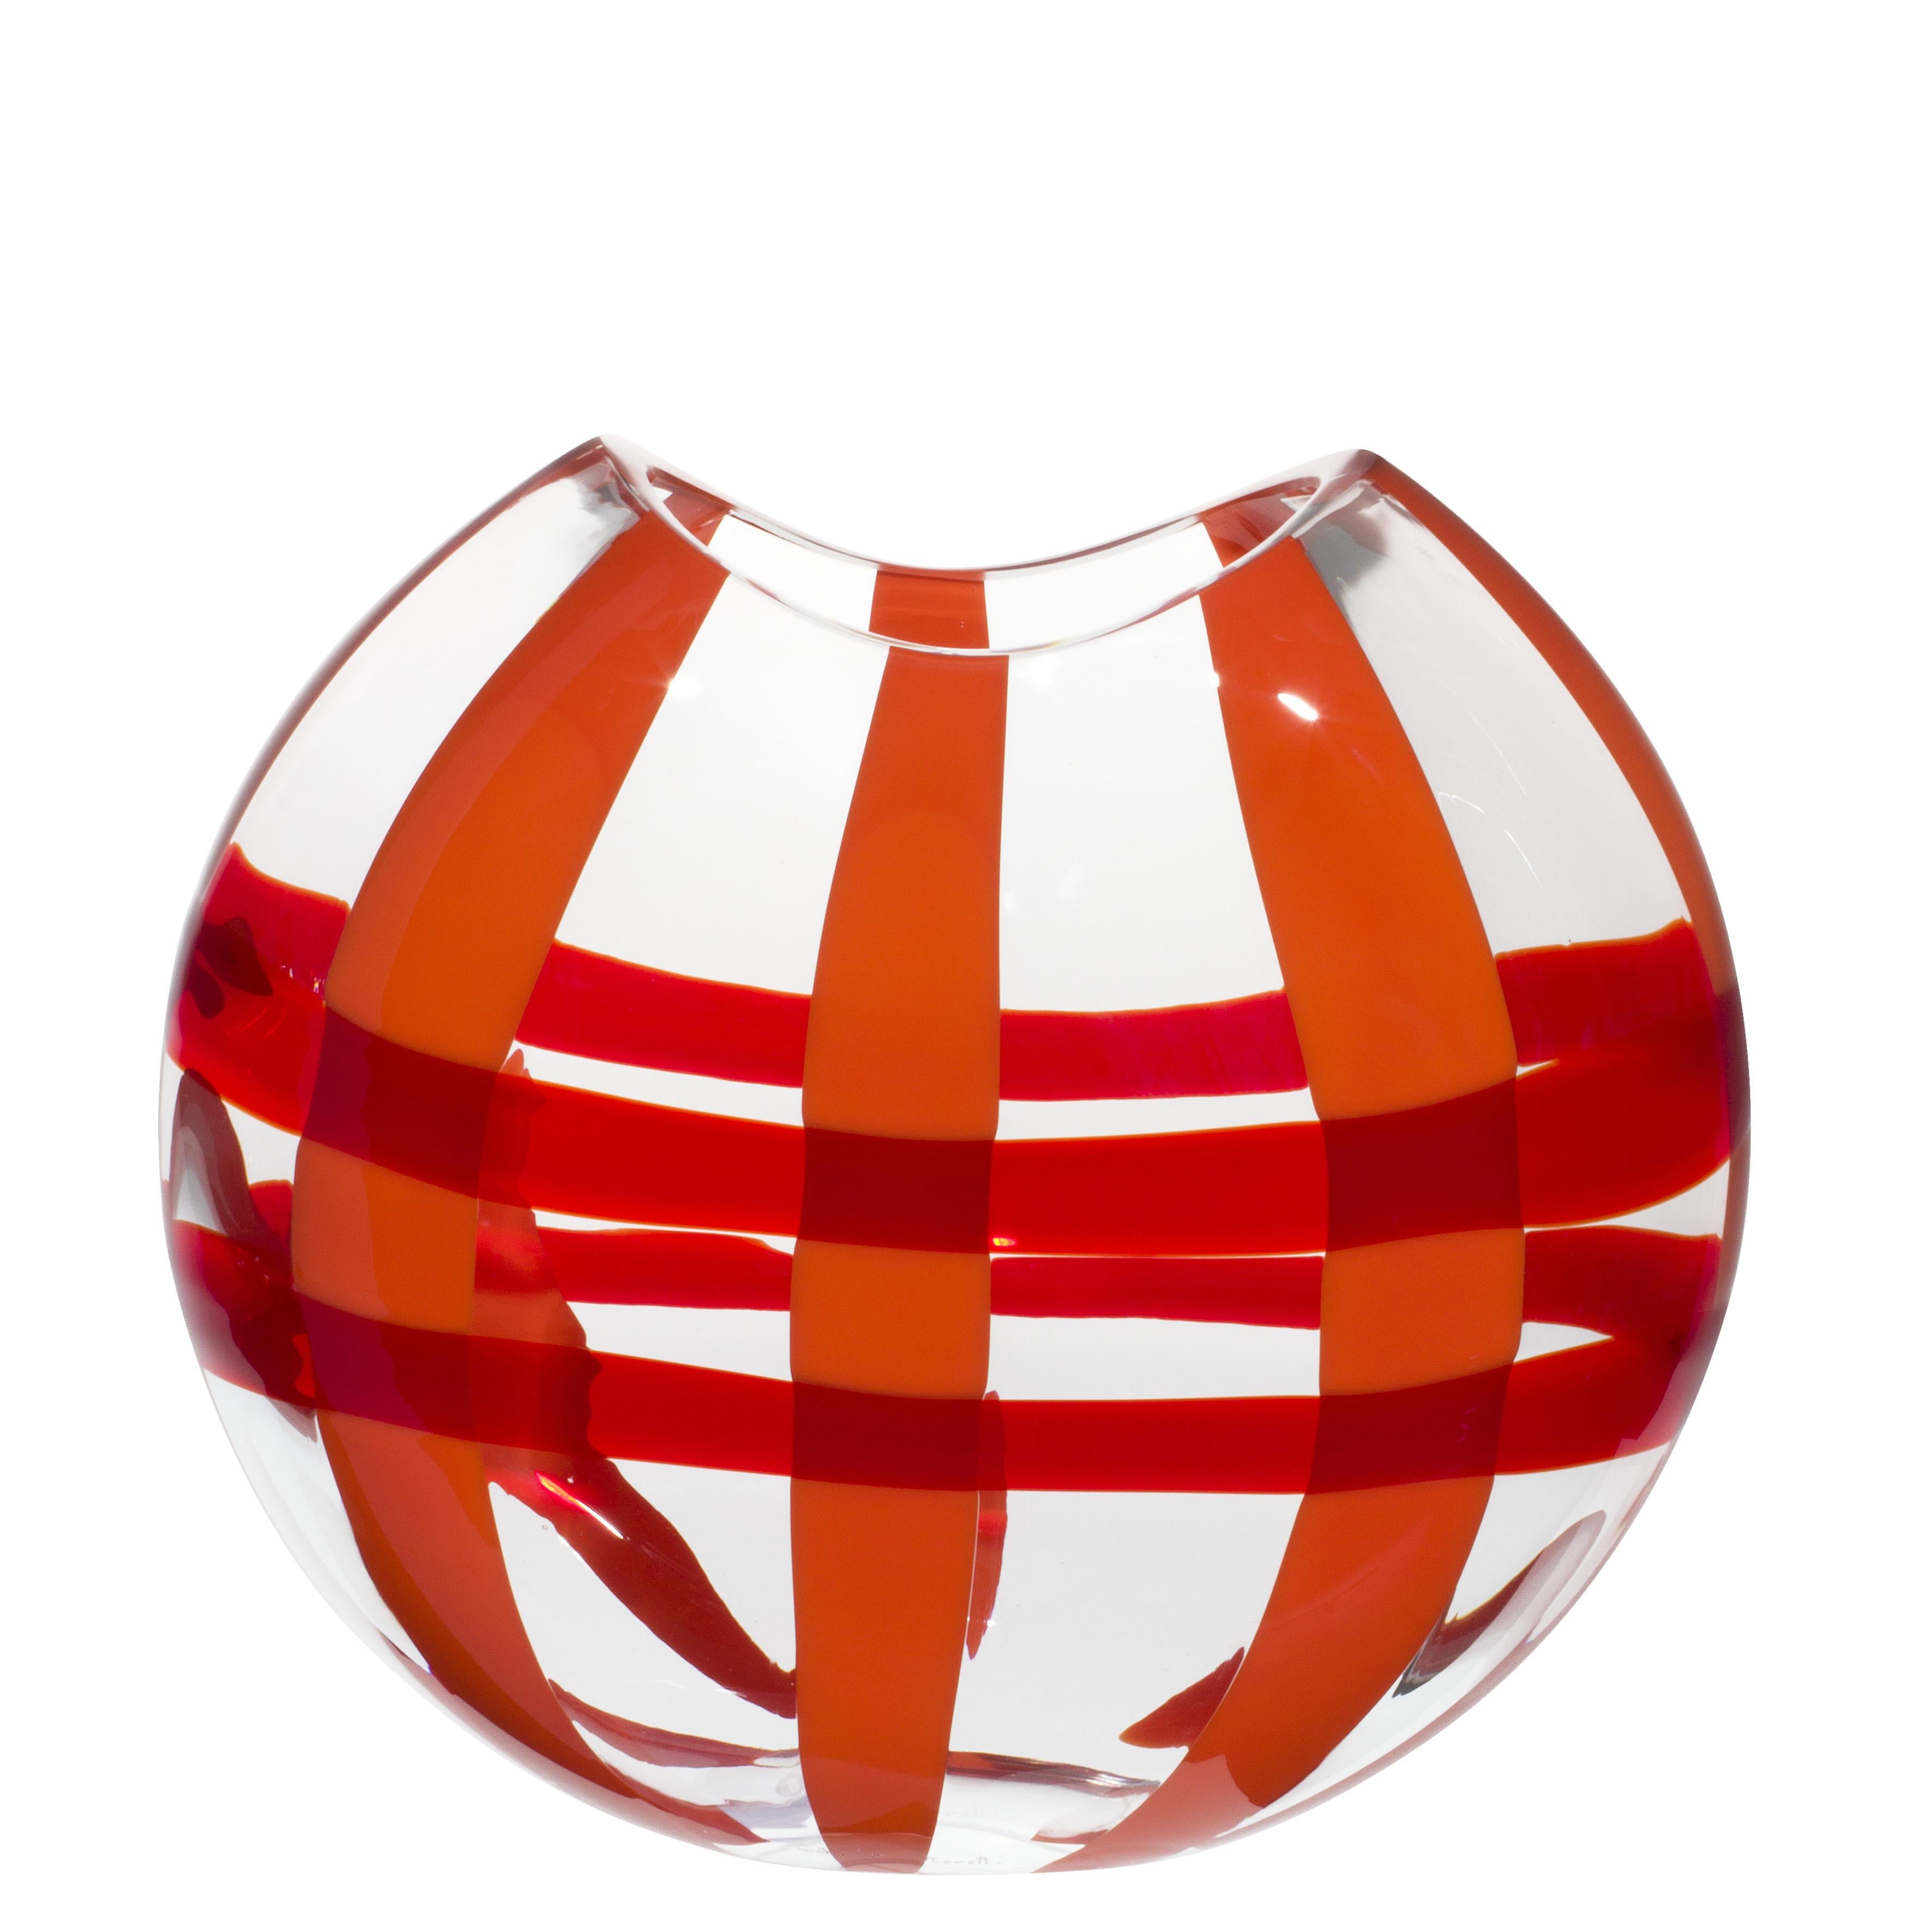 Die orangefarbene und rote Eclissi-Vase von Carlo Moretti